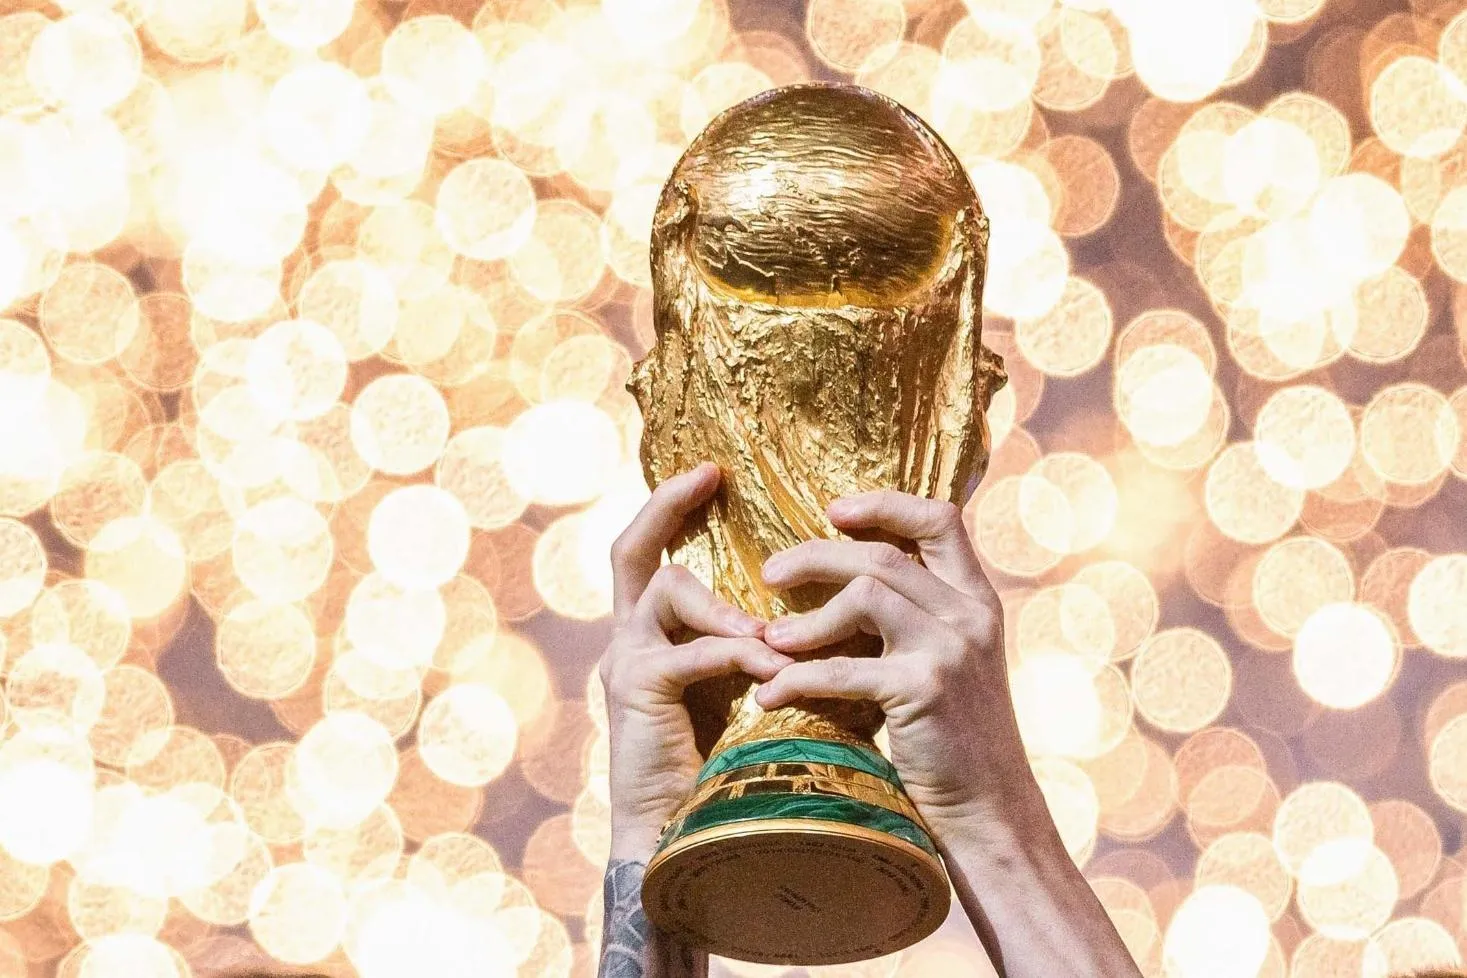 FIFA muda regulamento e Copa de 2026 terá ainda mais jogos - Acontece